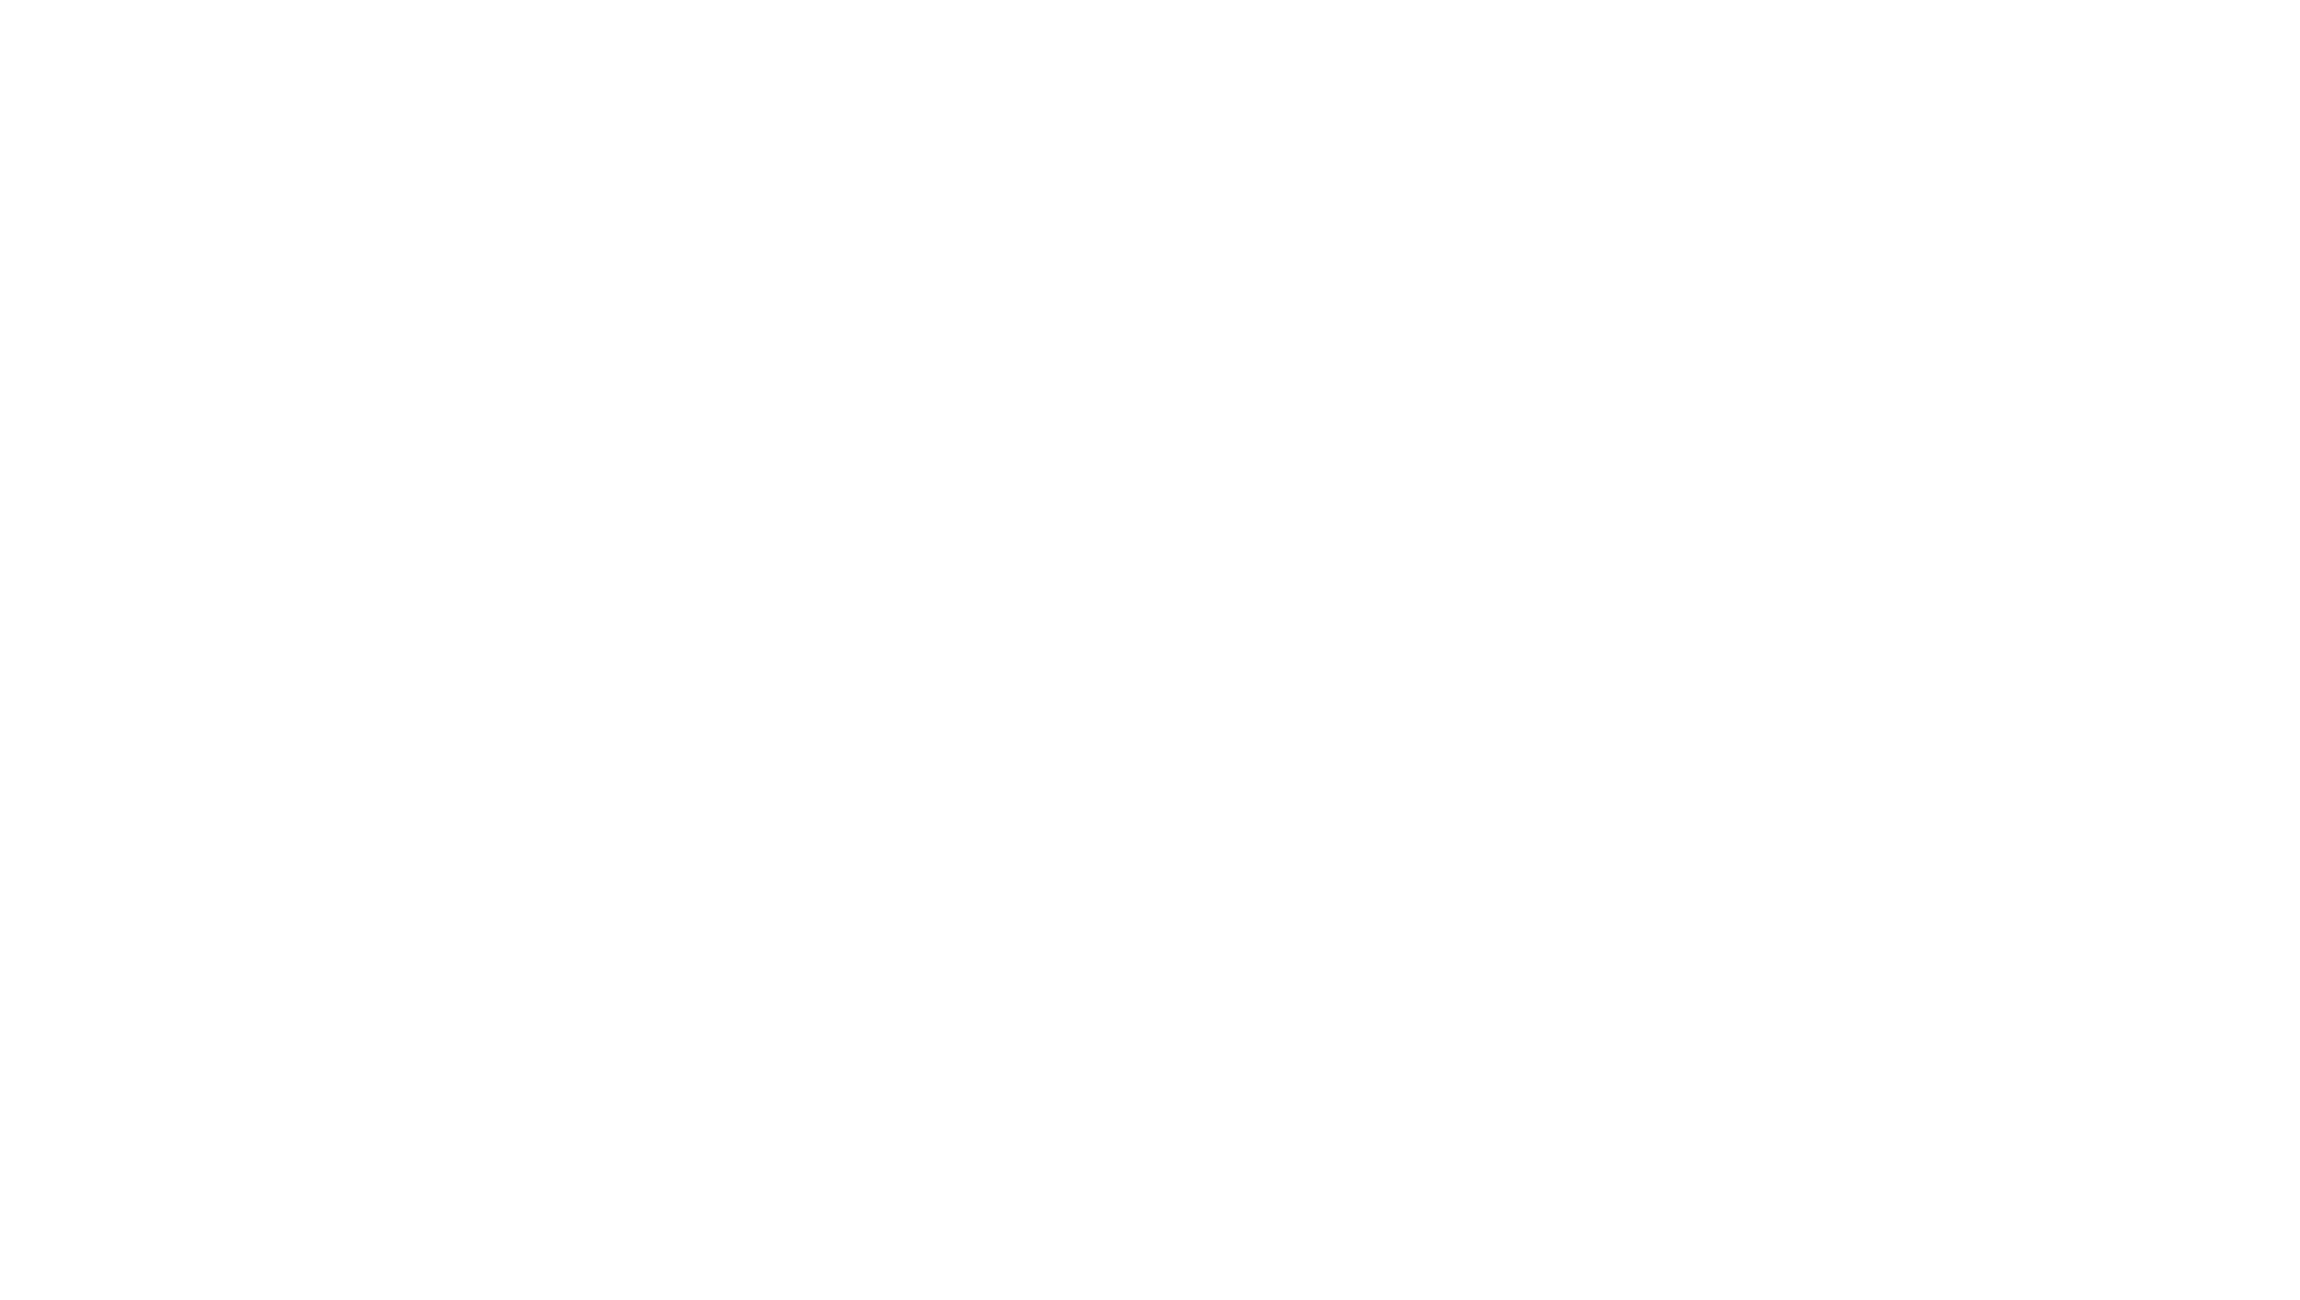 Niko's Souvlaki